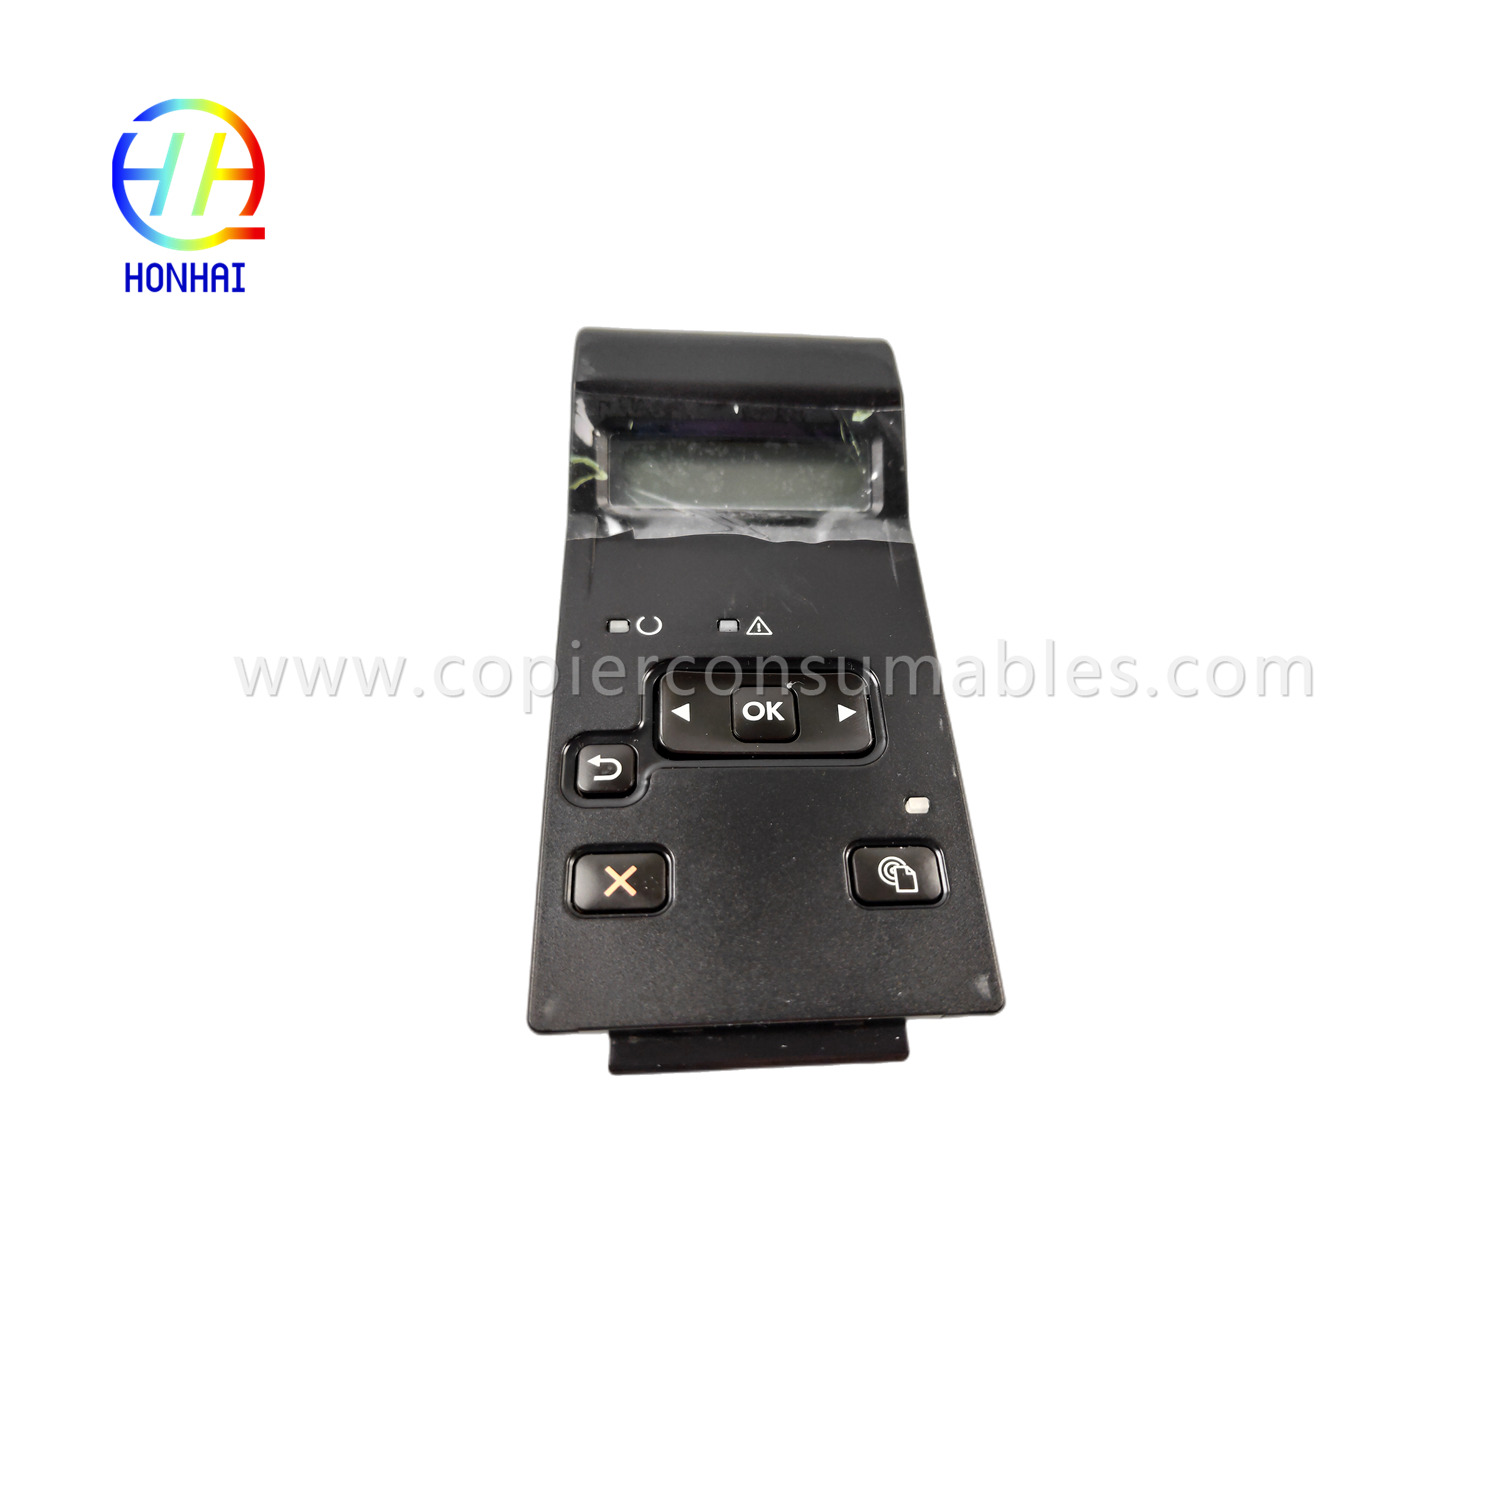 Kontrol-panela ukipen-pantaila HP LaserJet 400 M401d M401dn M401n M401 m401 401d 401dn 401n (1)